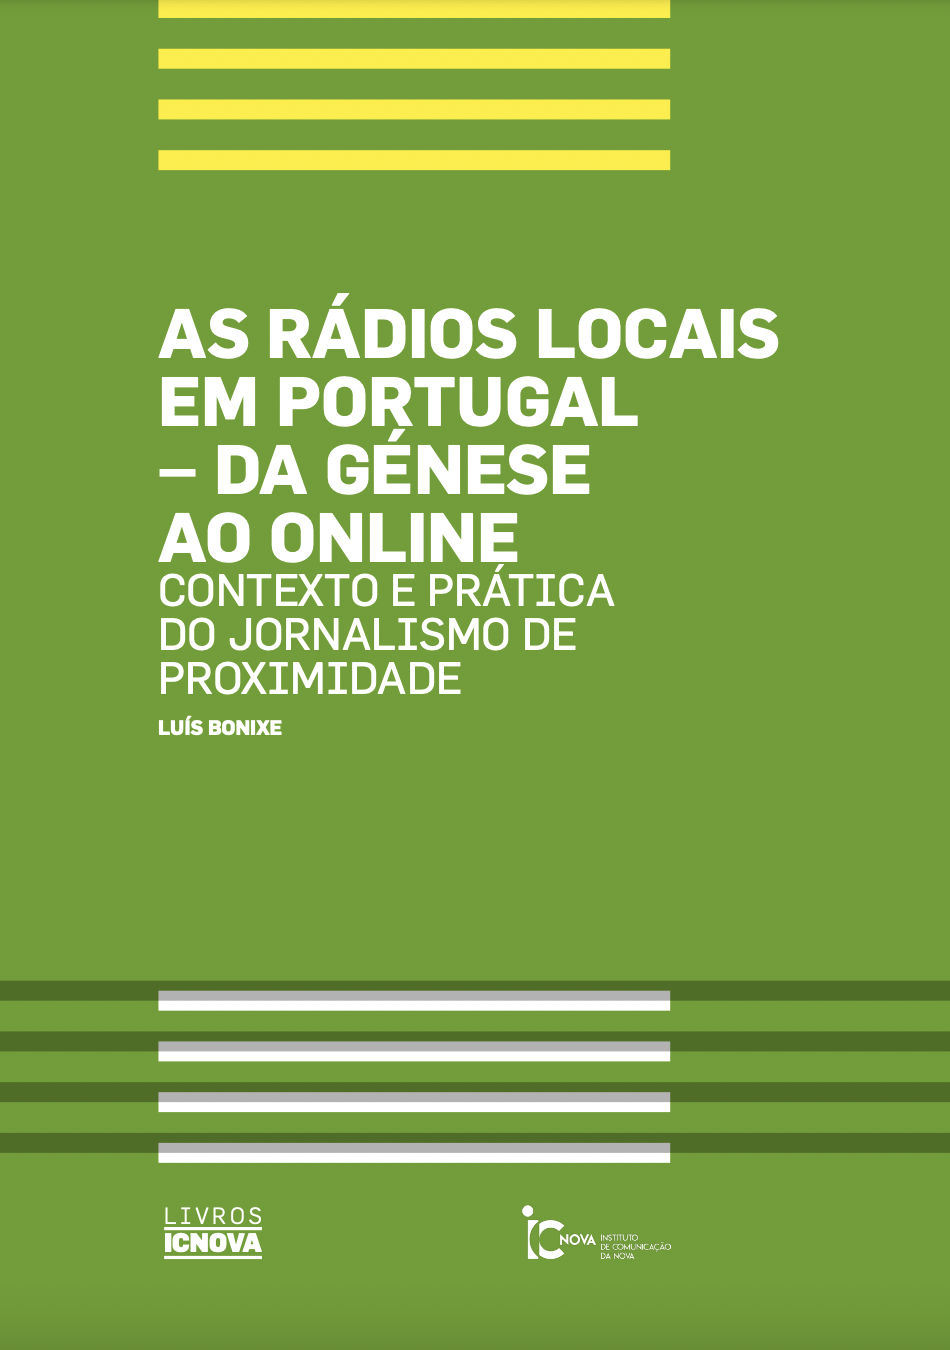 					Ver 2019: As rádios locais em Portugal – da génese ao online Contexto e prática do jornalismo de proximidade
				